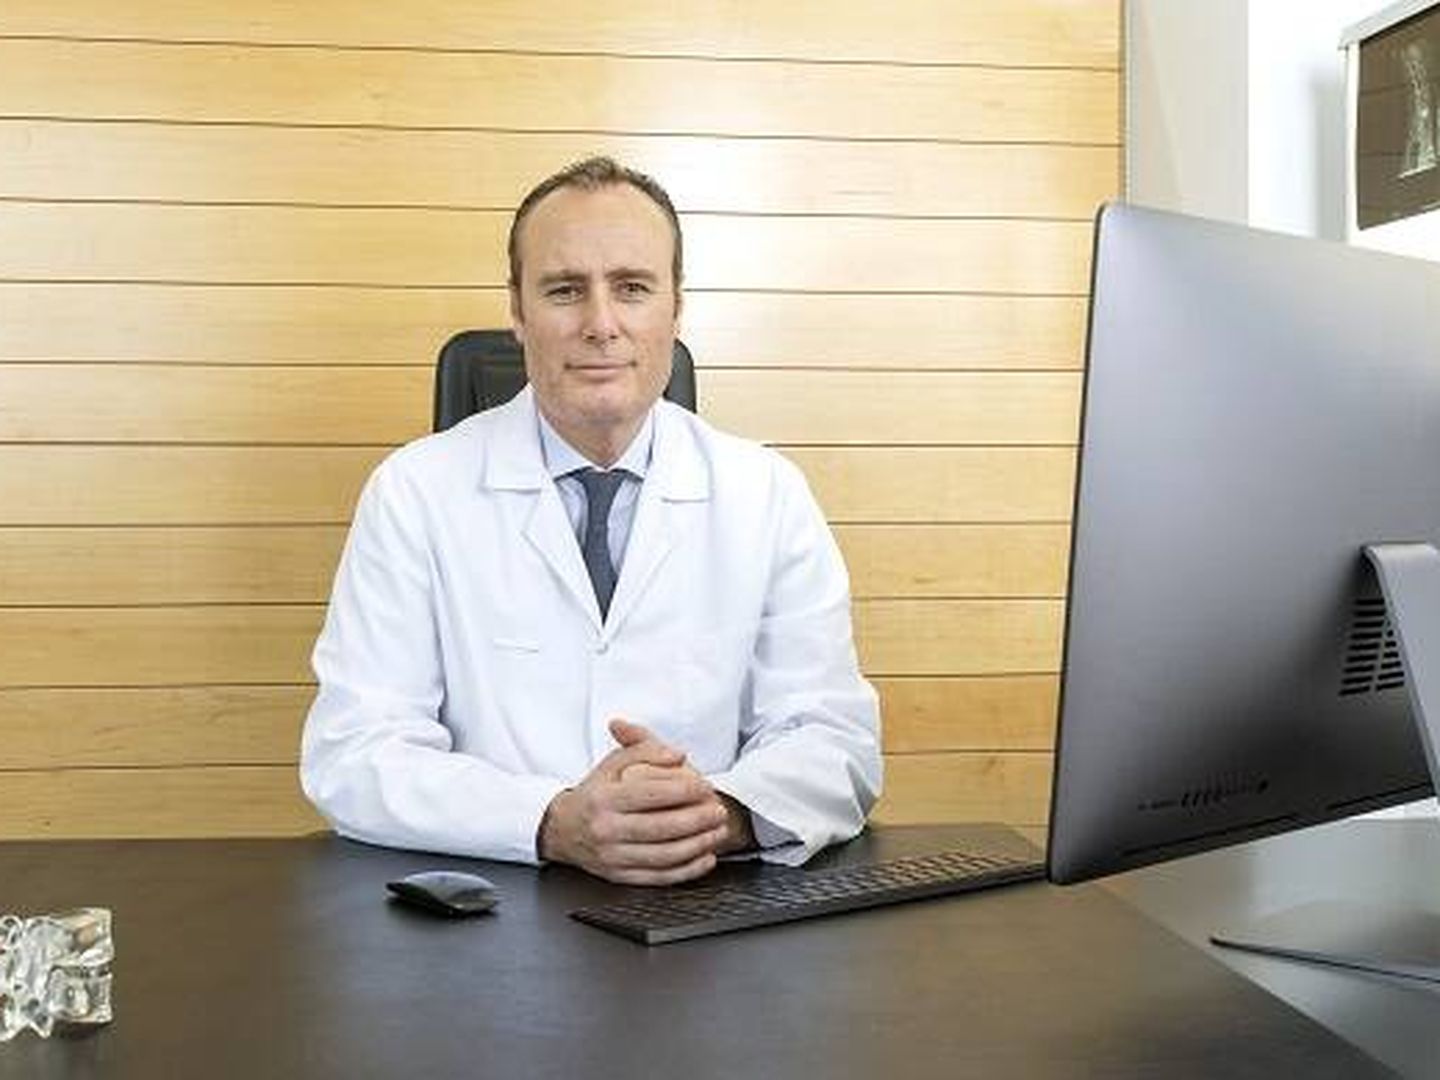 El neurocirujano Pablo Clavel insiste en el uso racional de los medicamentos. (Instituto Clavel)